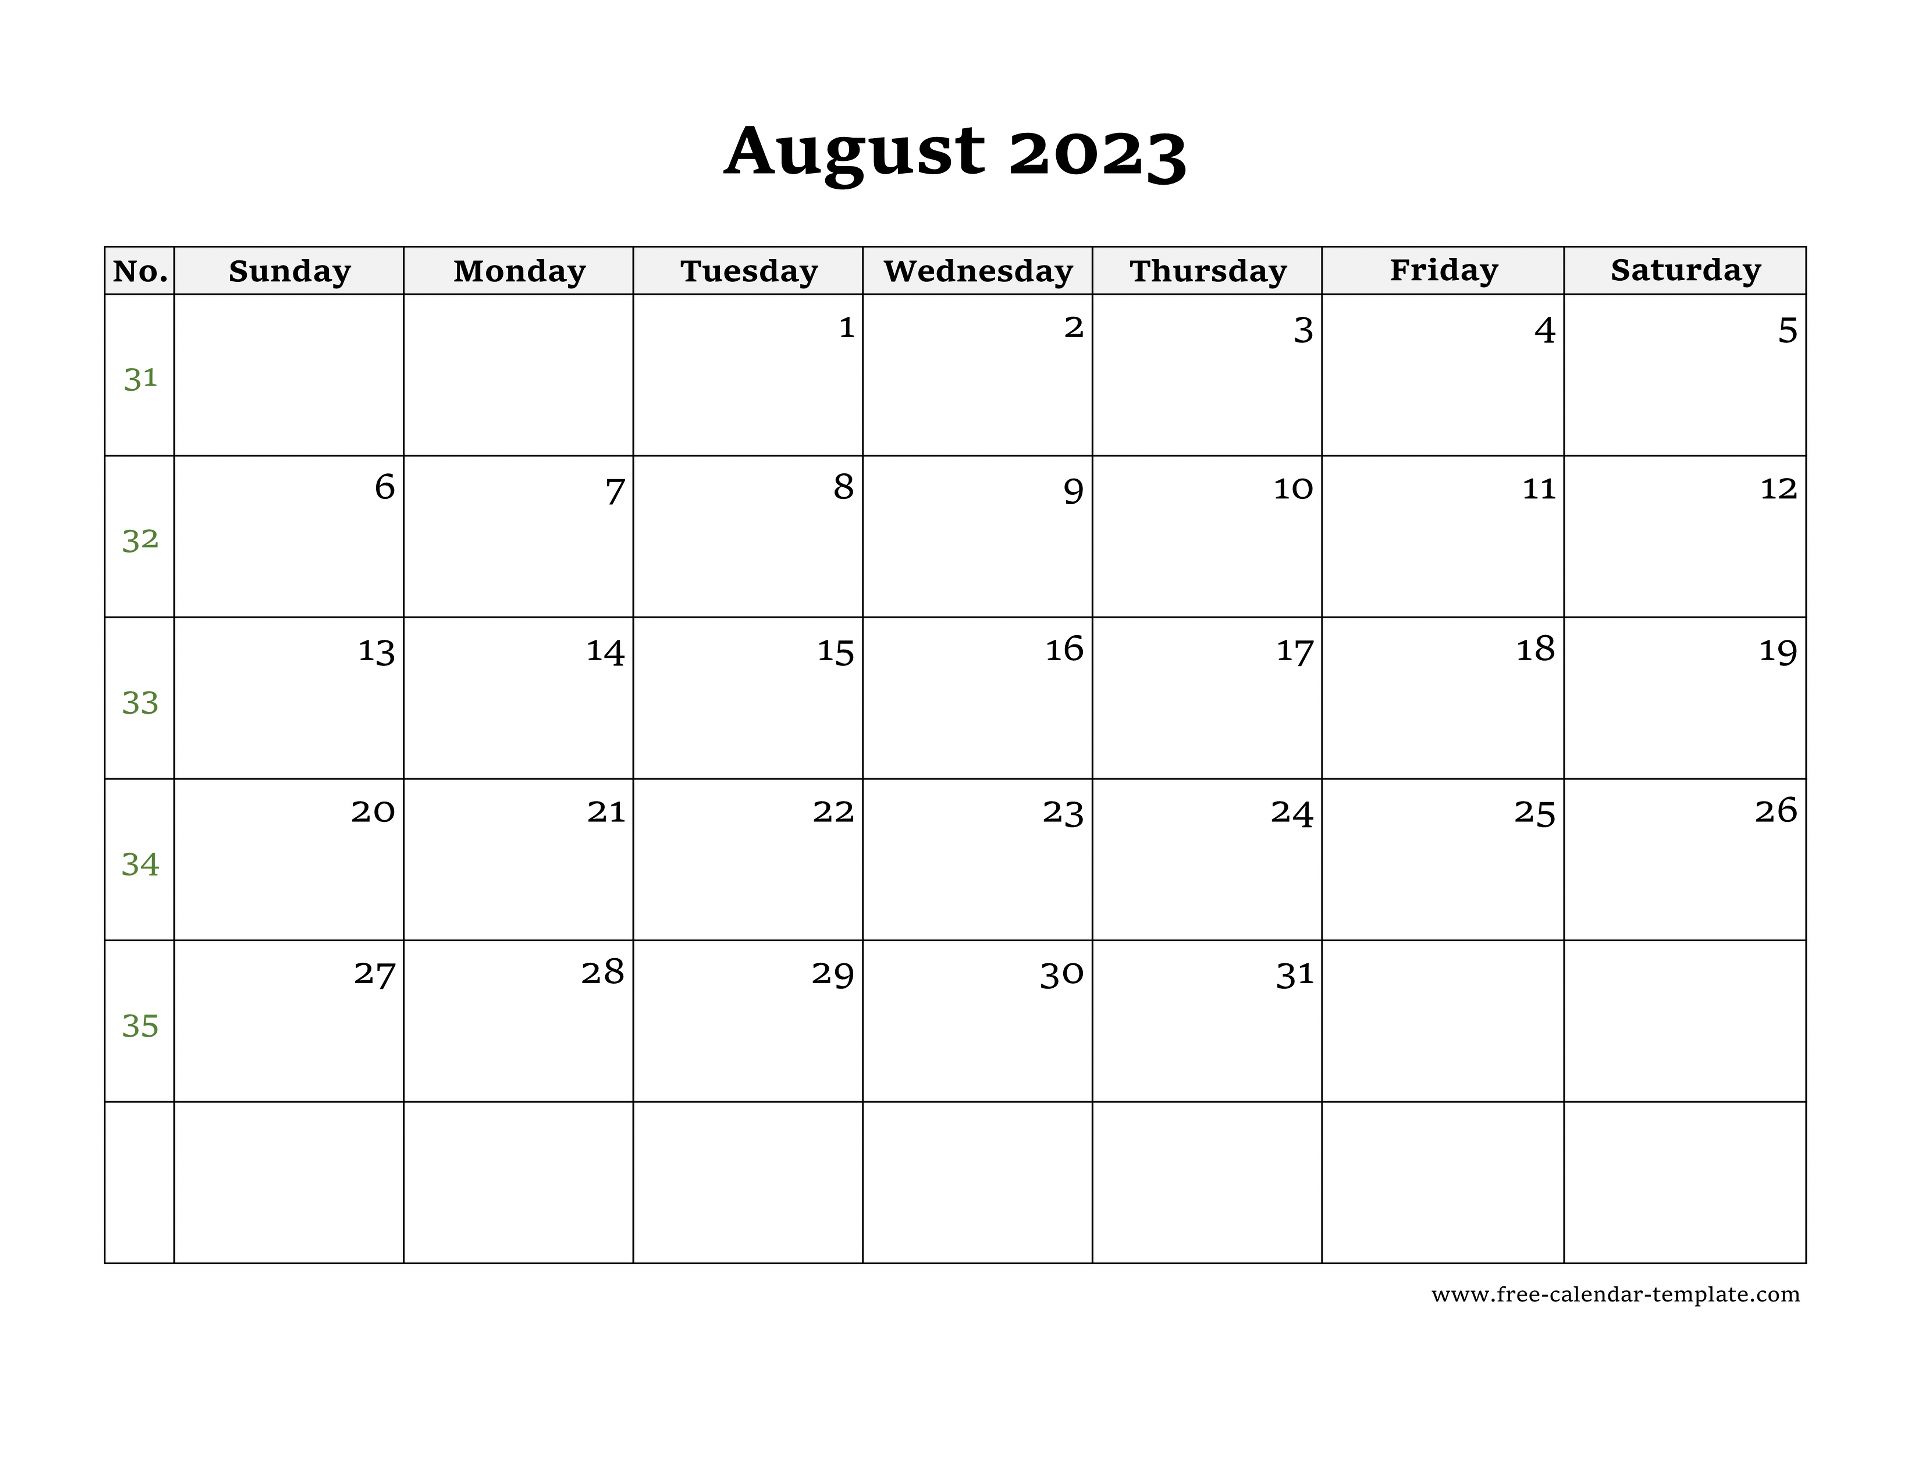 August 2023 Free Calendar Tempplate Free calendar template com